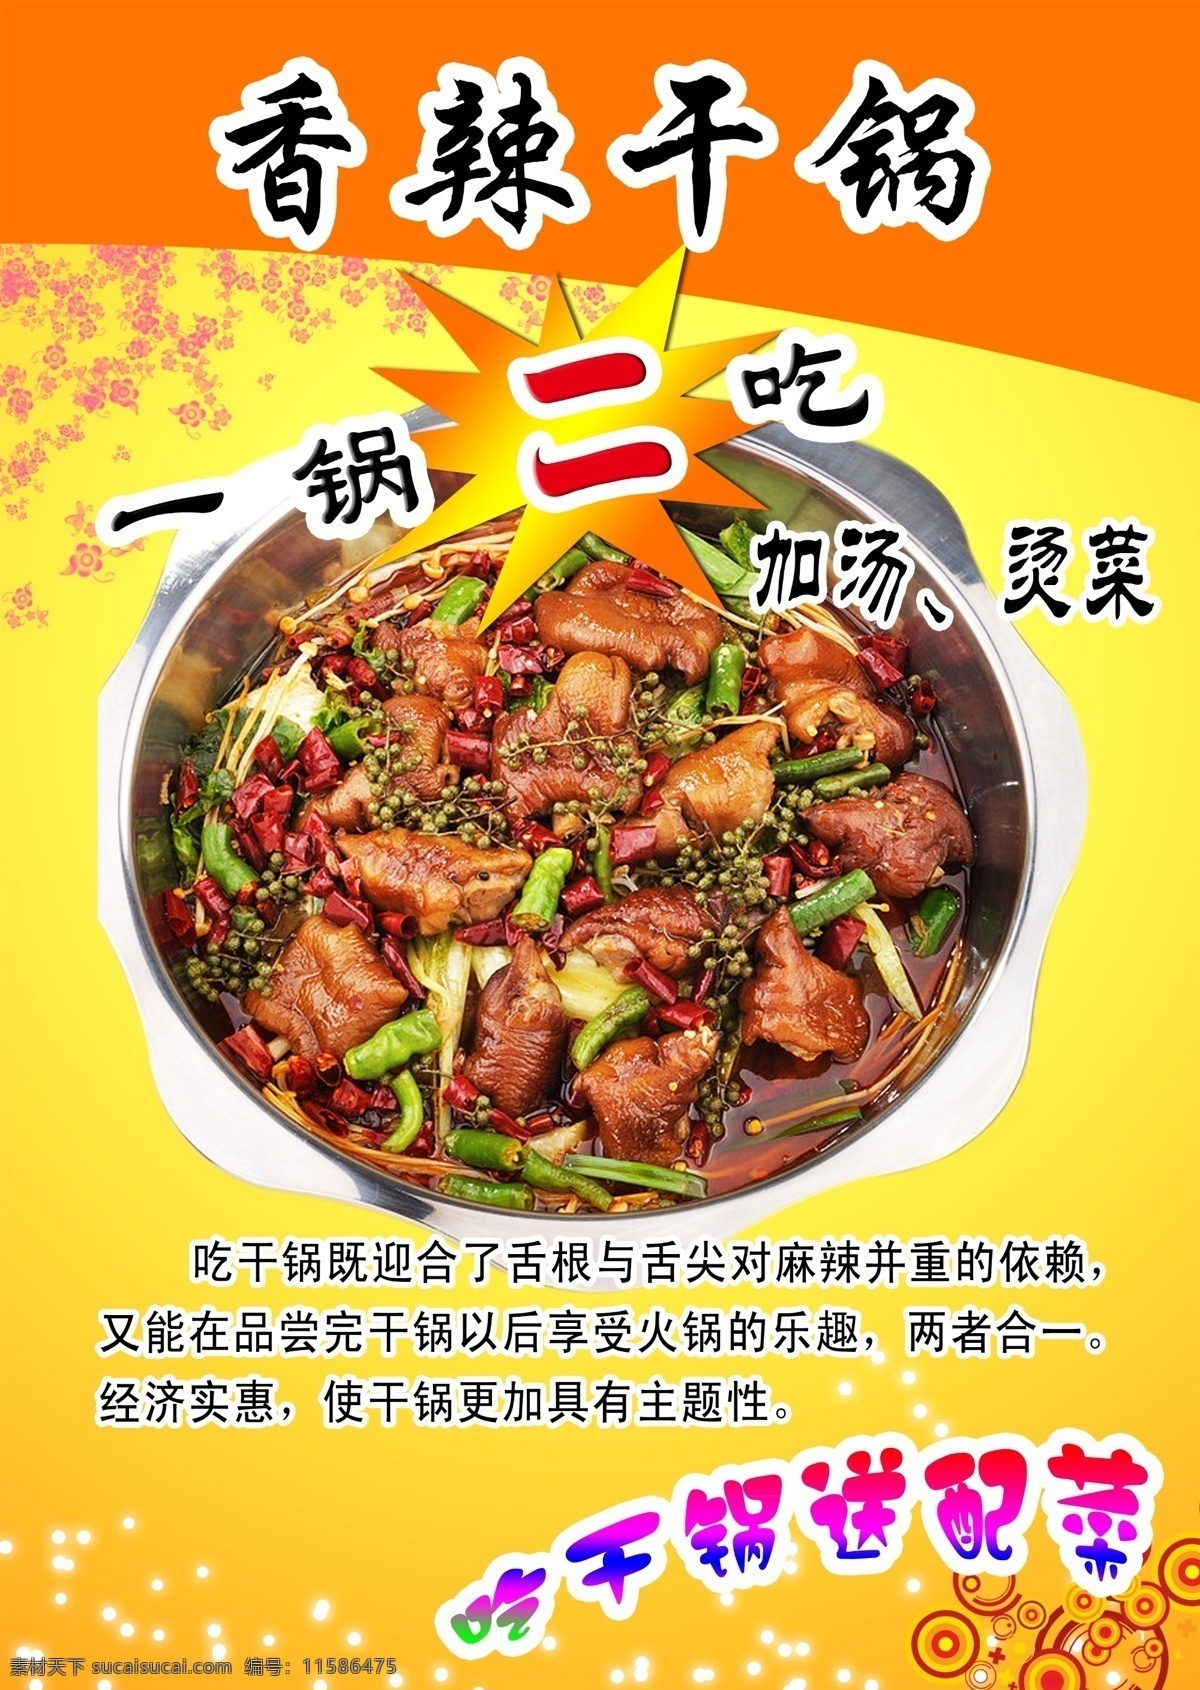 香辣干锅 菜单 一锅二吃 特色菜 海报 dm宣传单 广告设计模板 源文件